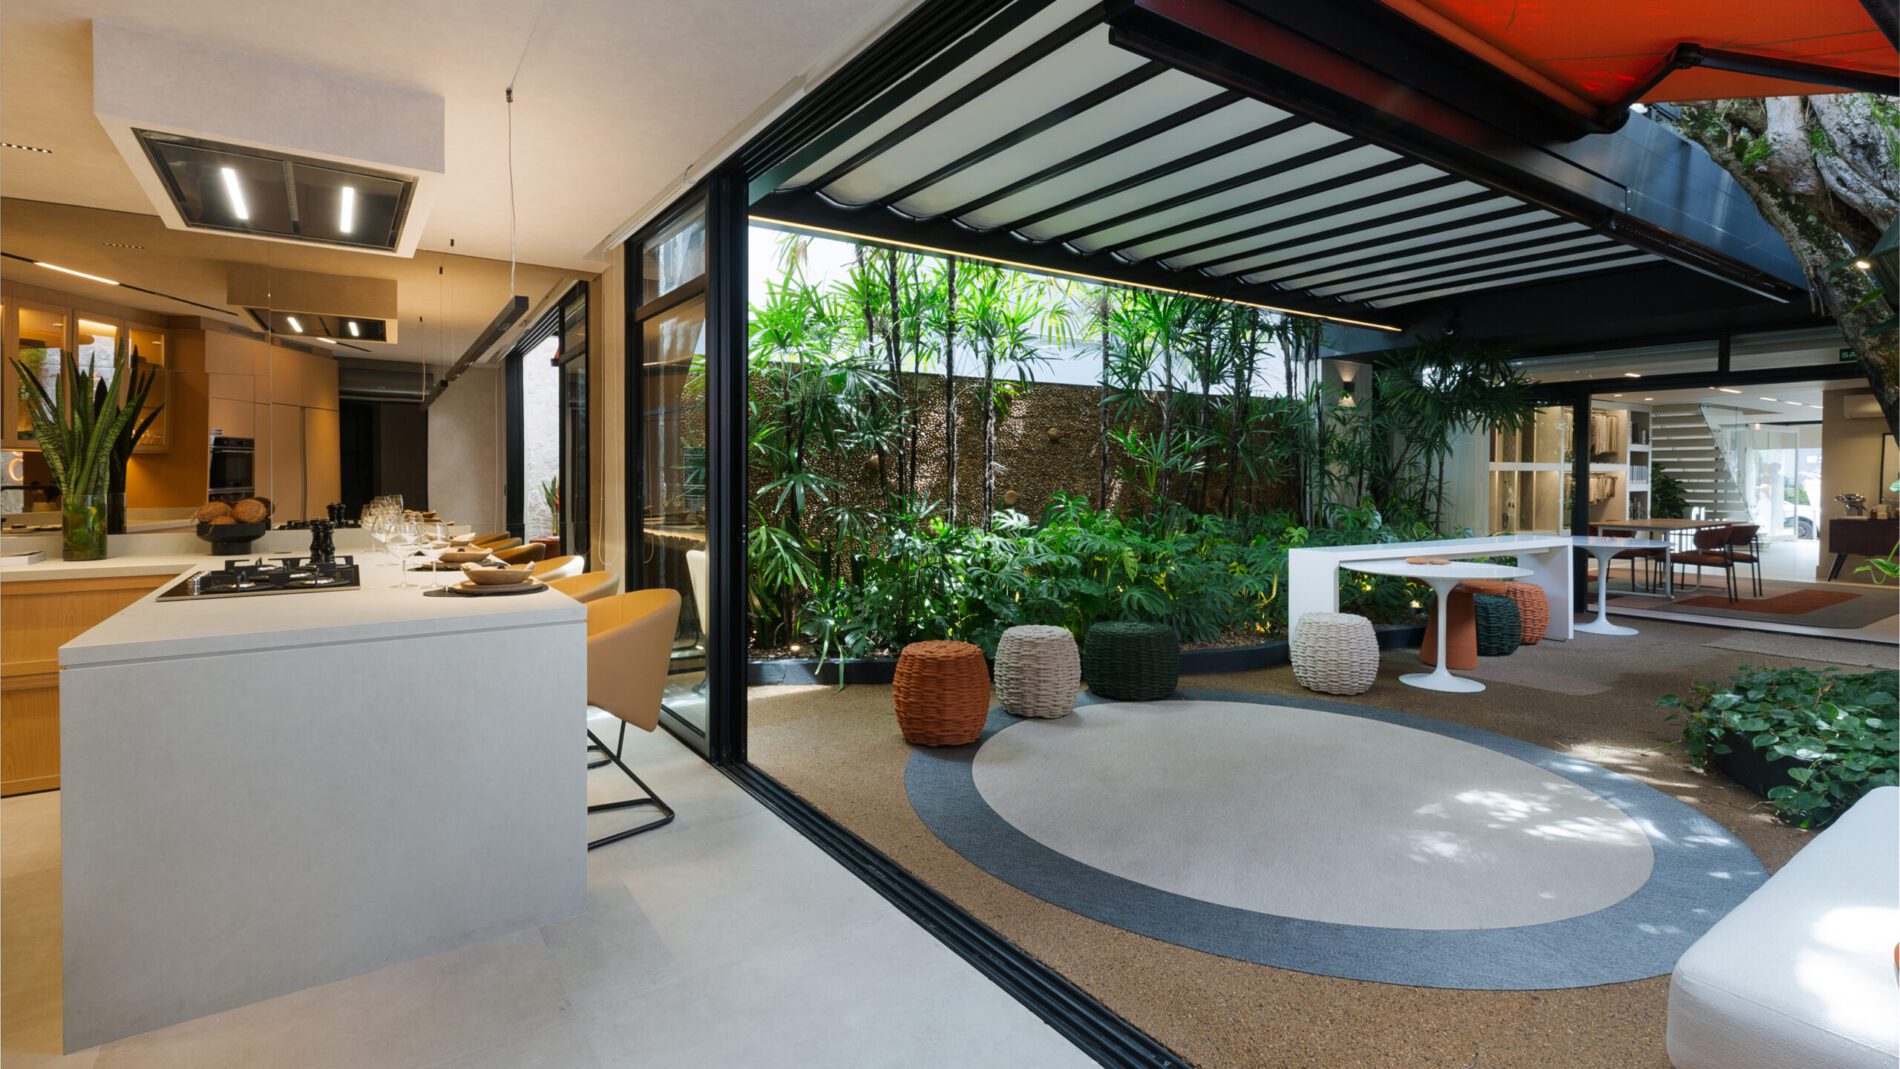 O novo showroom da Uniflex Gabriel fica em uma casa projetada nos anos 1950 pelo arquiteto modernista David Libeskind, com layout assinado pelos arquitetos Bel Lobo e Bob Néri, do escritório Be.Bo.Etc | Foto: Divulgação